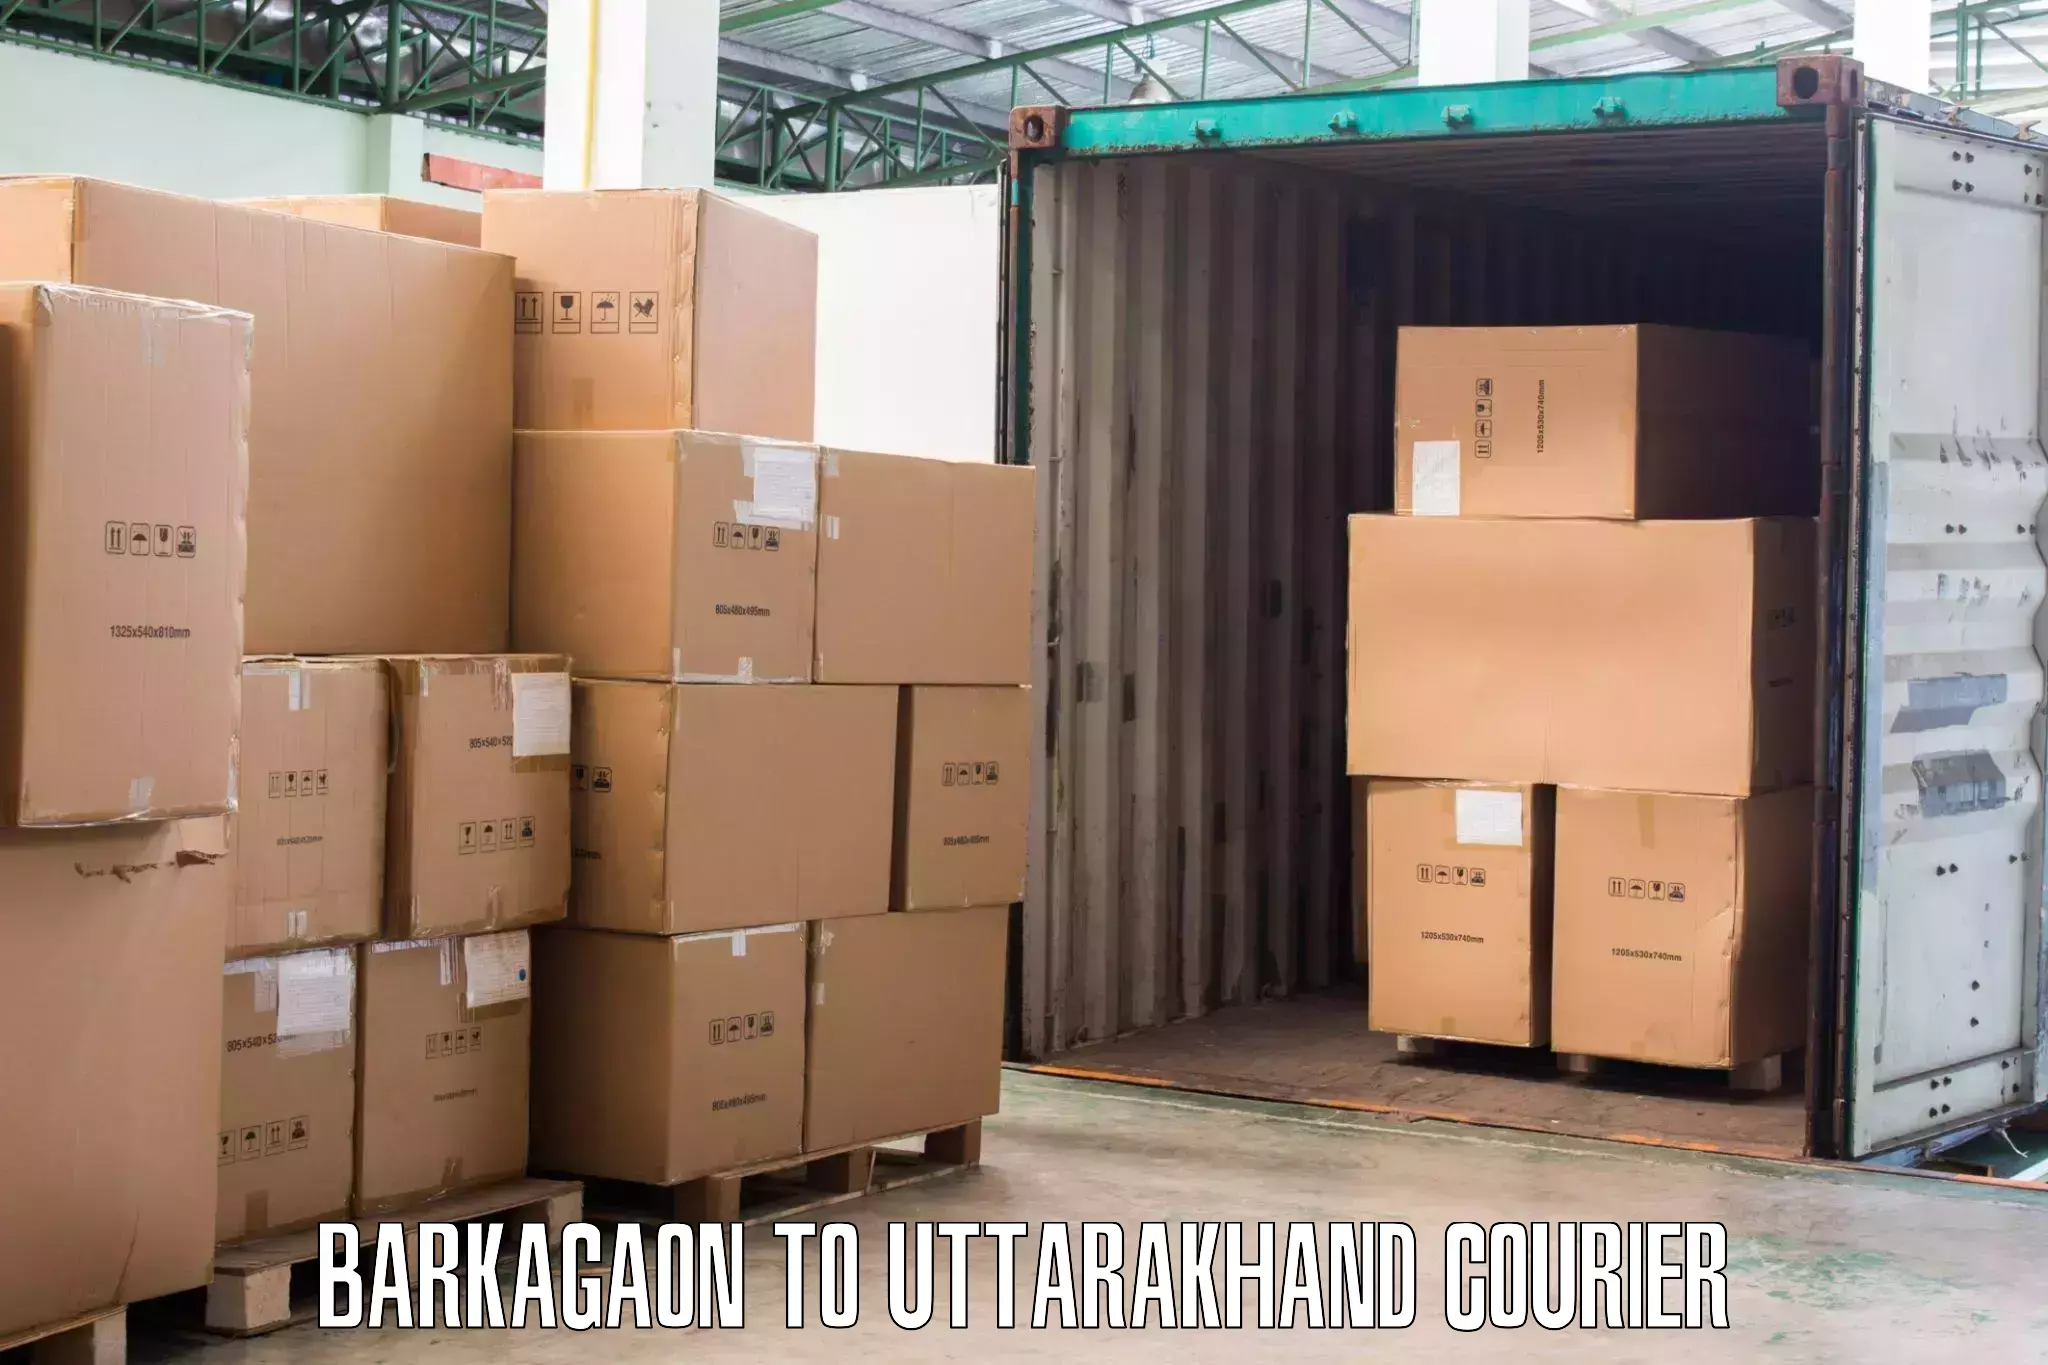 Quick furniture moving Barkagaon to Uttarakhand